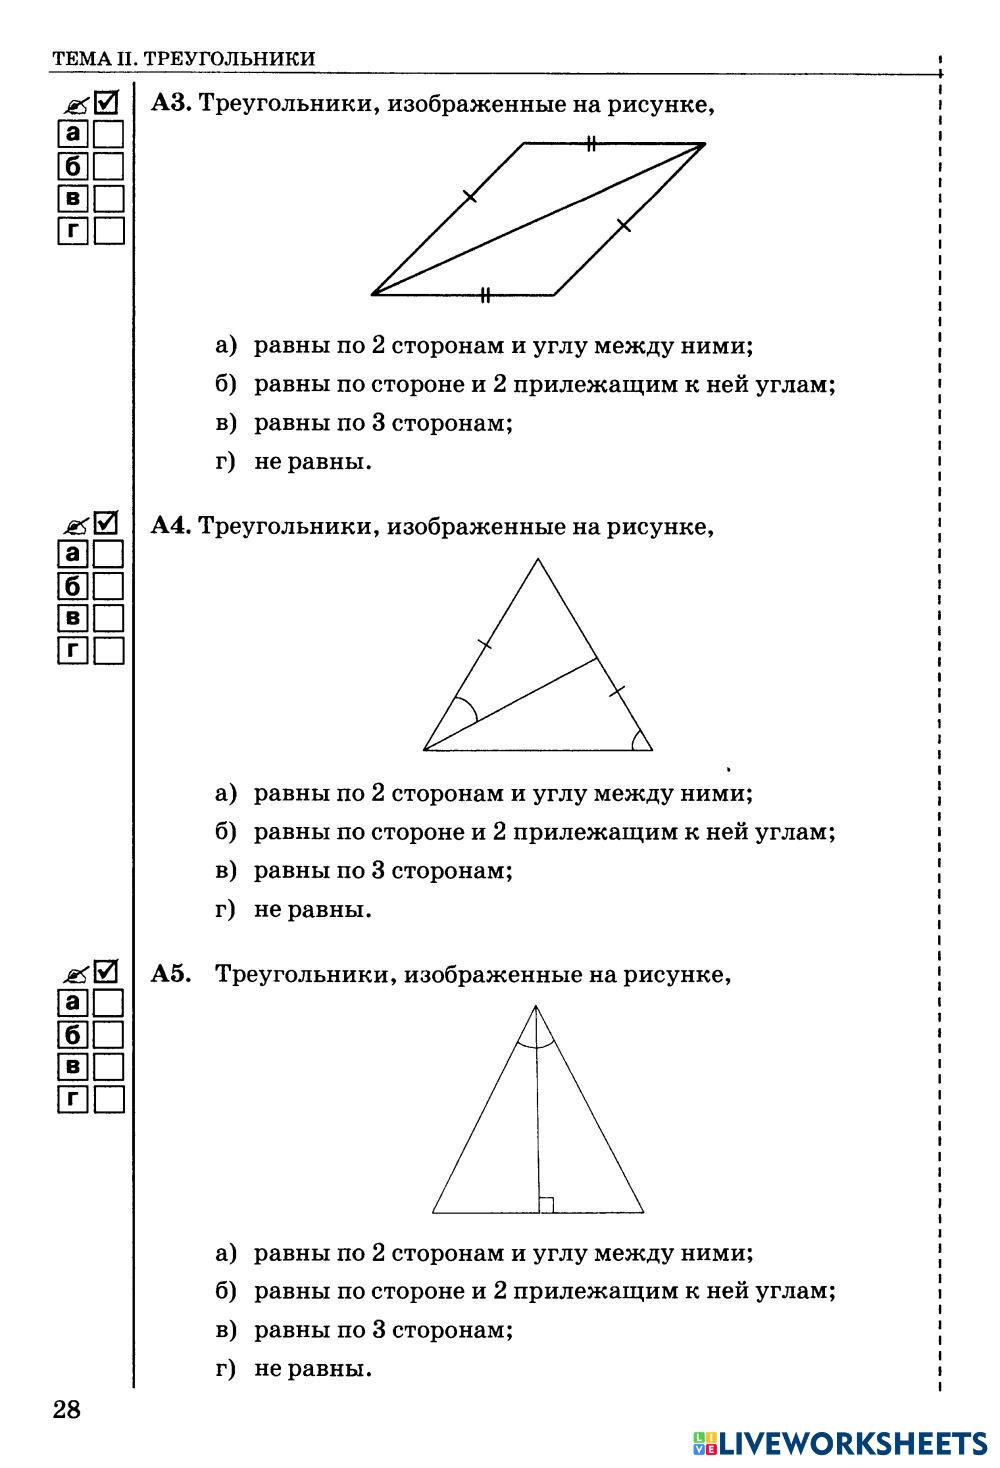 Контрольная работа прямоугольные треугольники геометрические неравенства